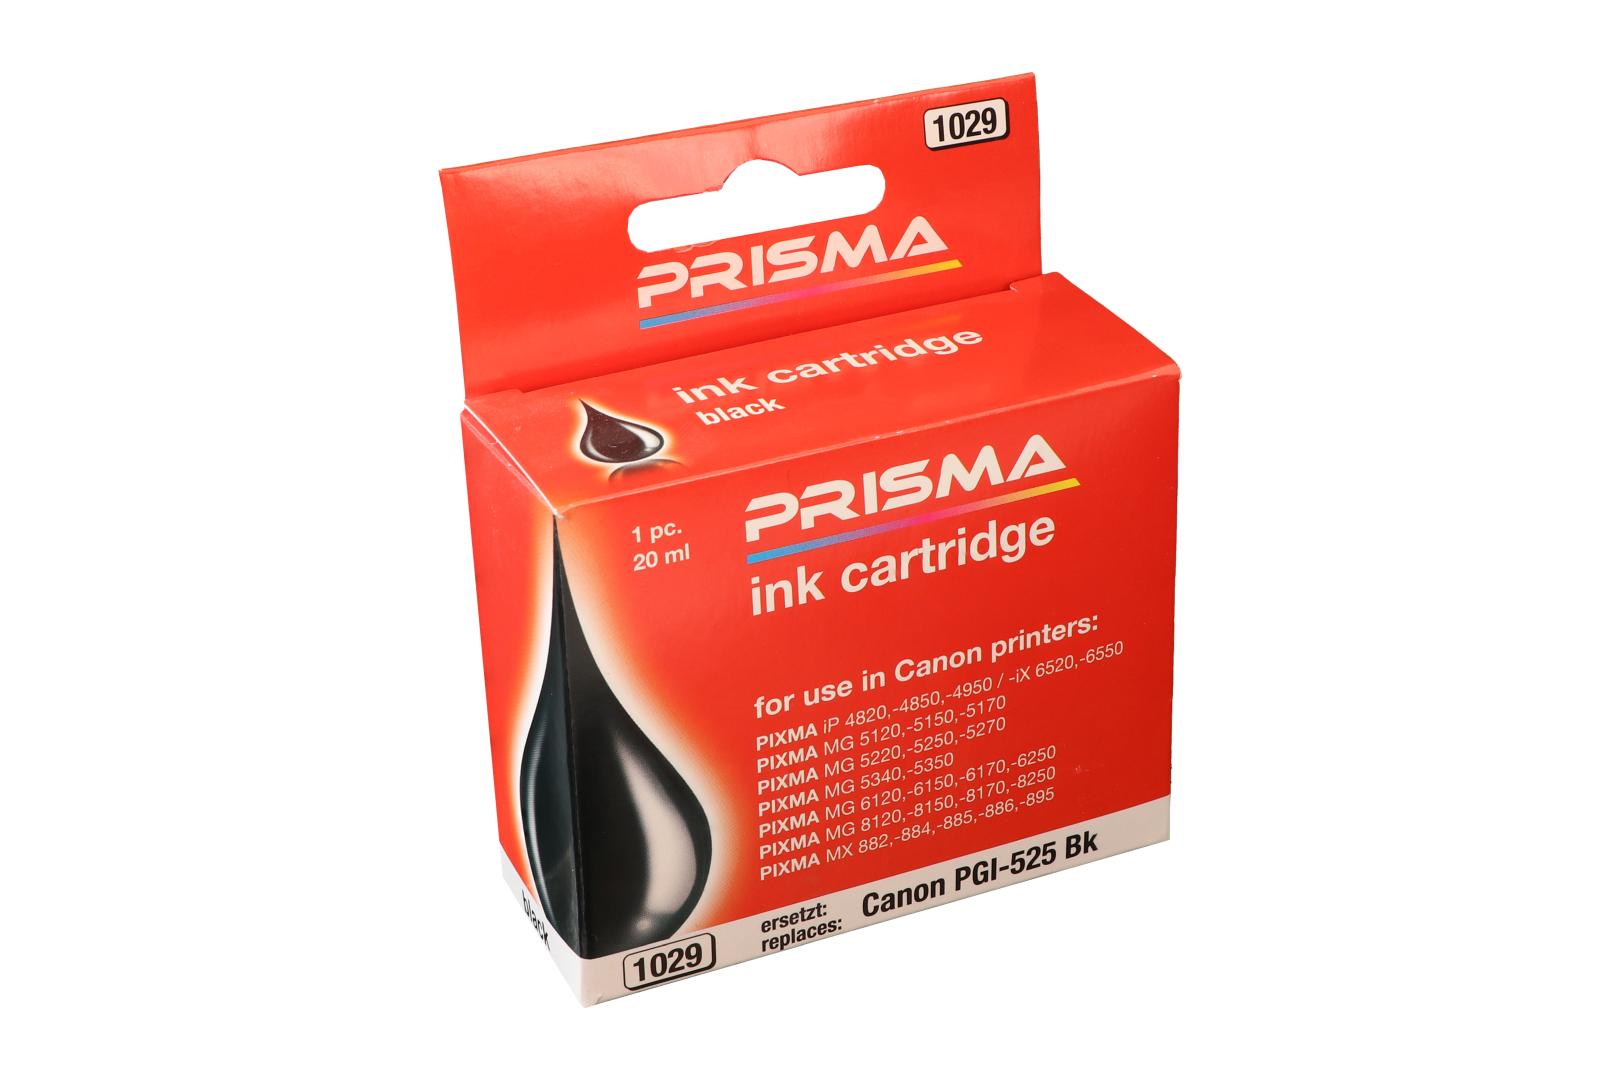 PRISMA 1029 Druckerpatrone für Canon Tintenstrahldrucker, schwarz, 20 ml